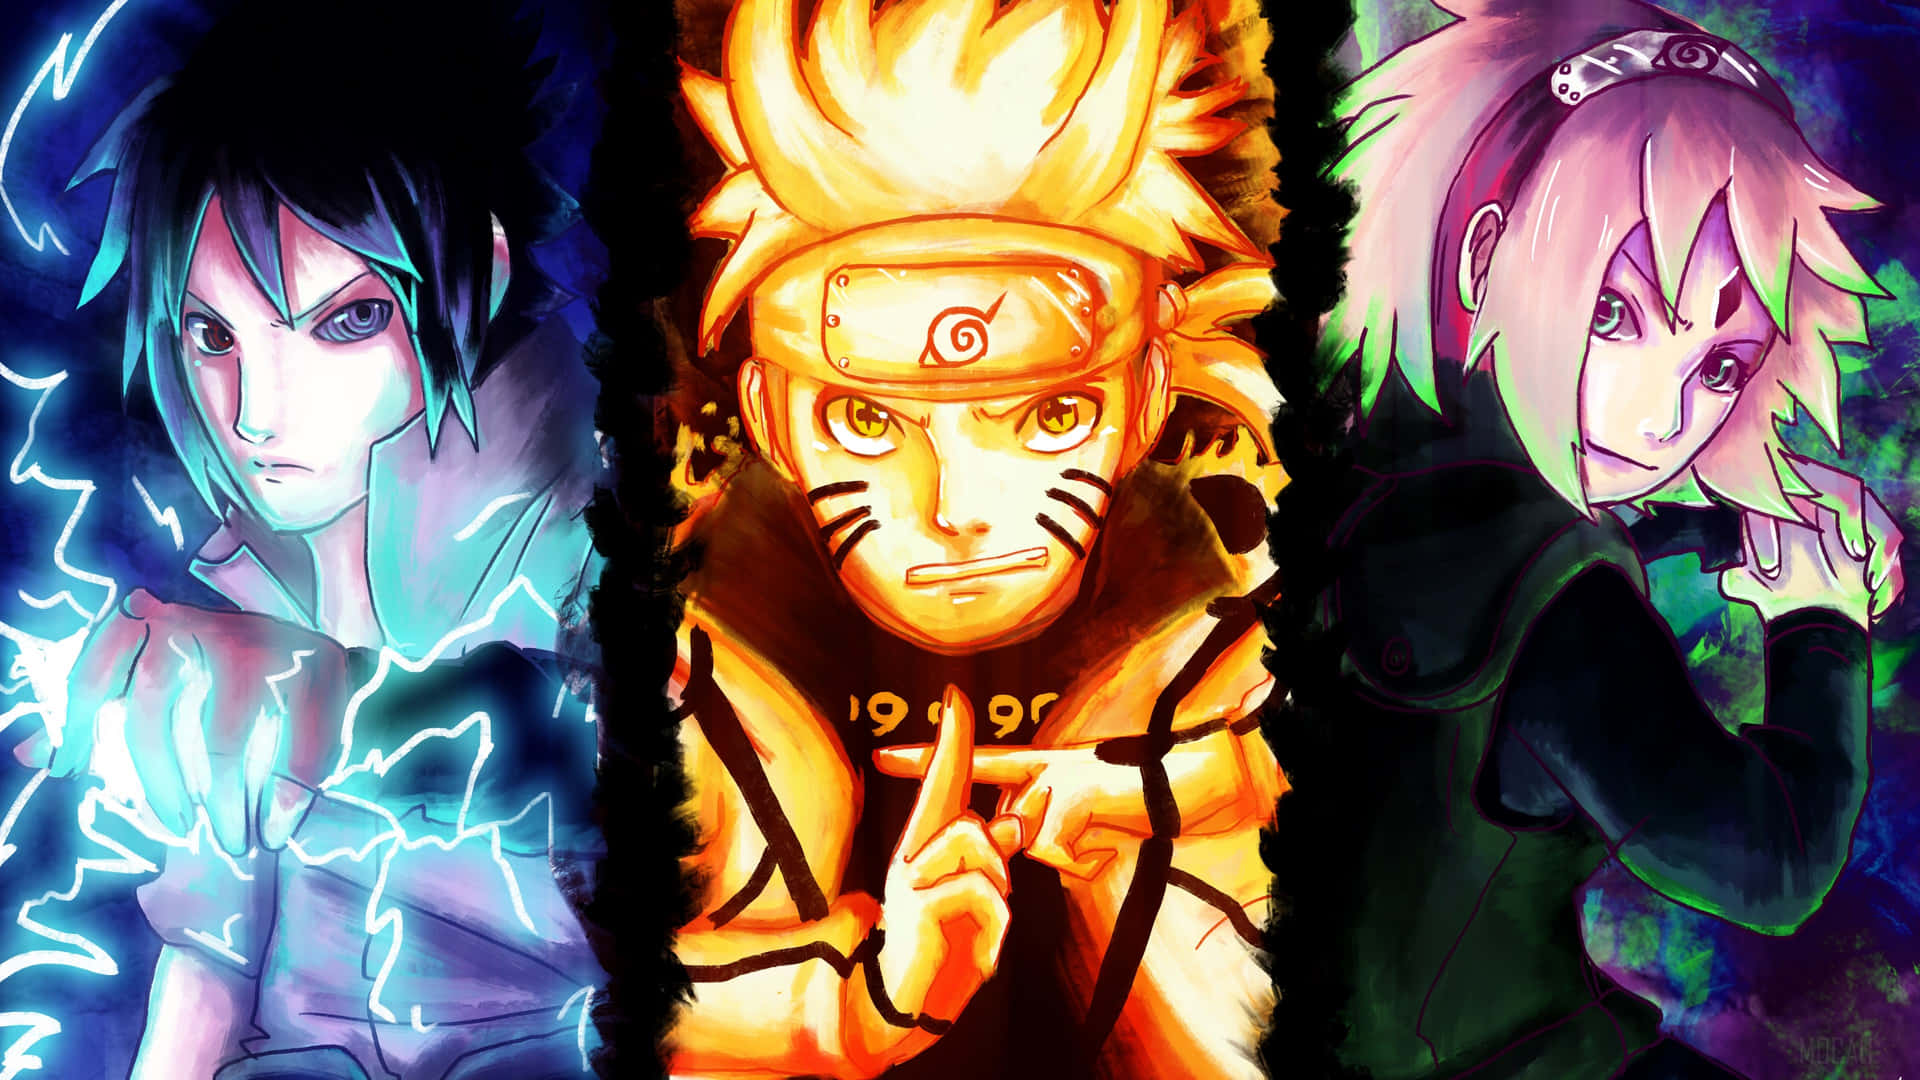 Naruto Backgrounds: Hâm mộ loạt truyện tranh nổi tiếng Naruto? Hãy kết hợp sự yêu thích của bạn với hình nền Naruto ấn tượng đầy màu sắc. Tìm kiếm những hình ảnh trong suốt tinh tế hoặc những hình ảnh rực rỡ, tất cả điều có ở ảnh liên quan. Thể hiện niềm đam mê của mình ngay hôm nay.